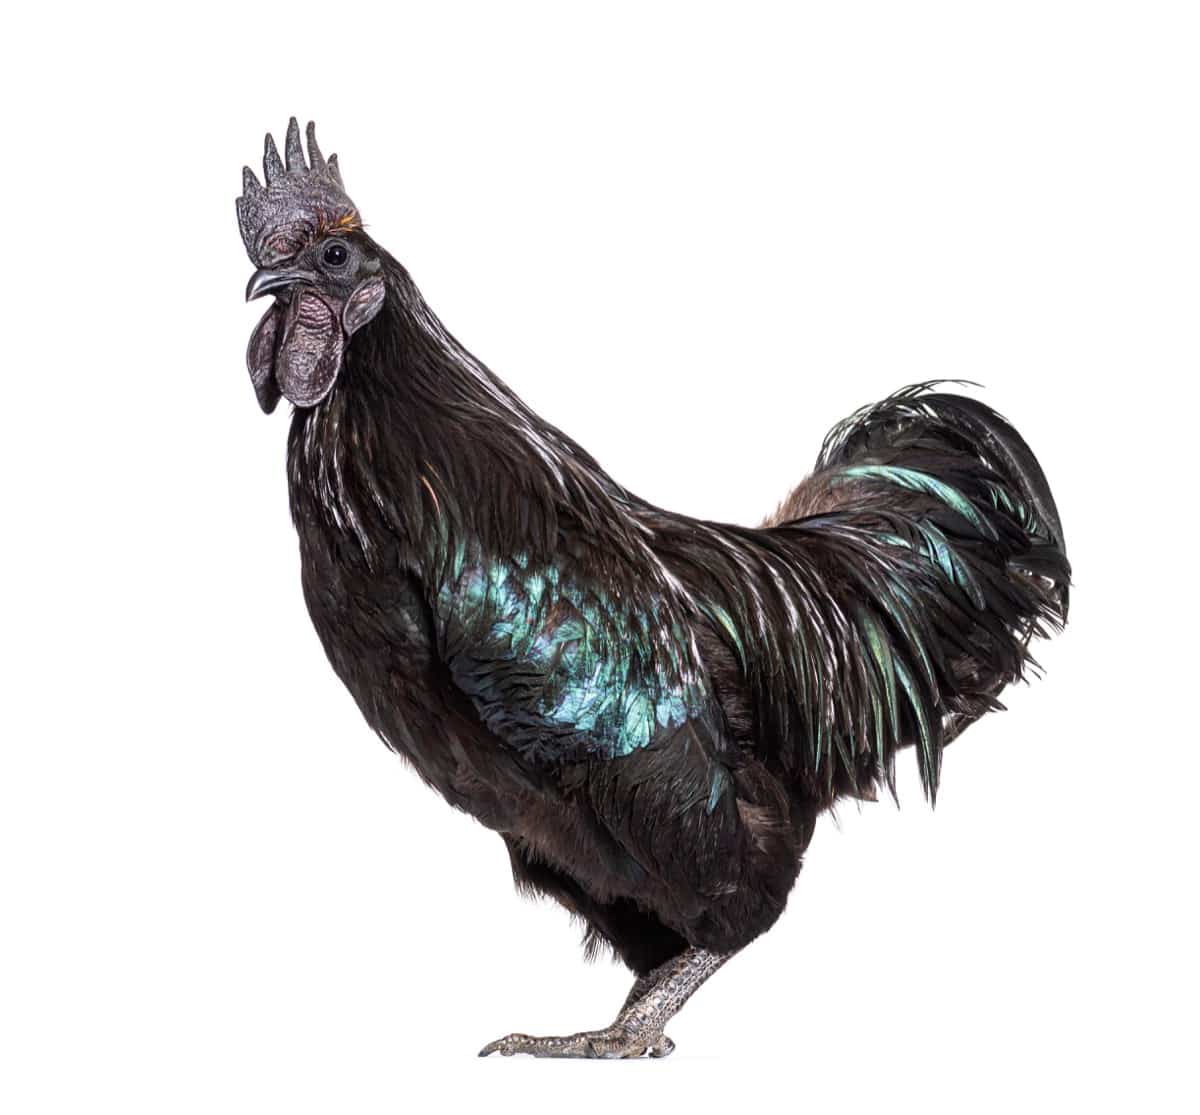 10 Black Chicken Breeds: Ayam Cemani